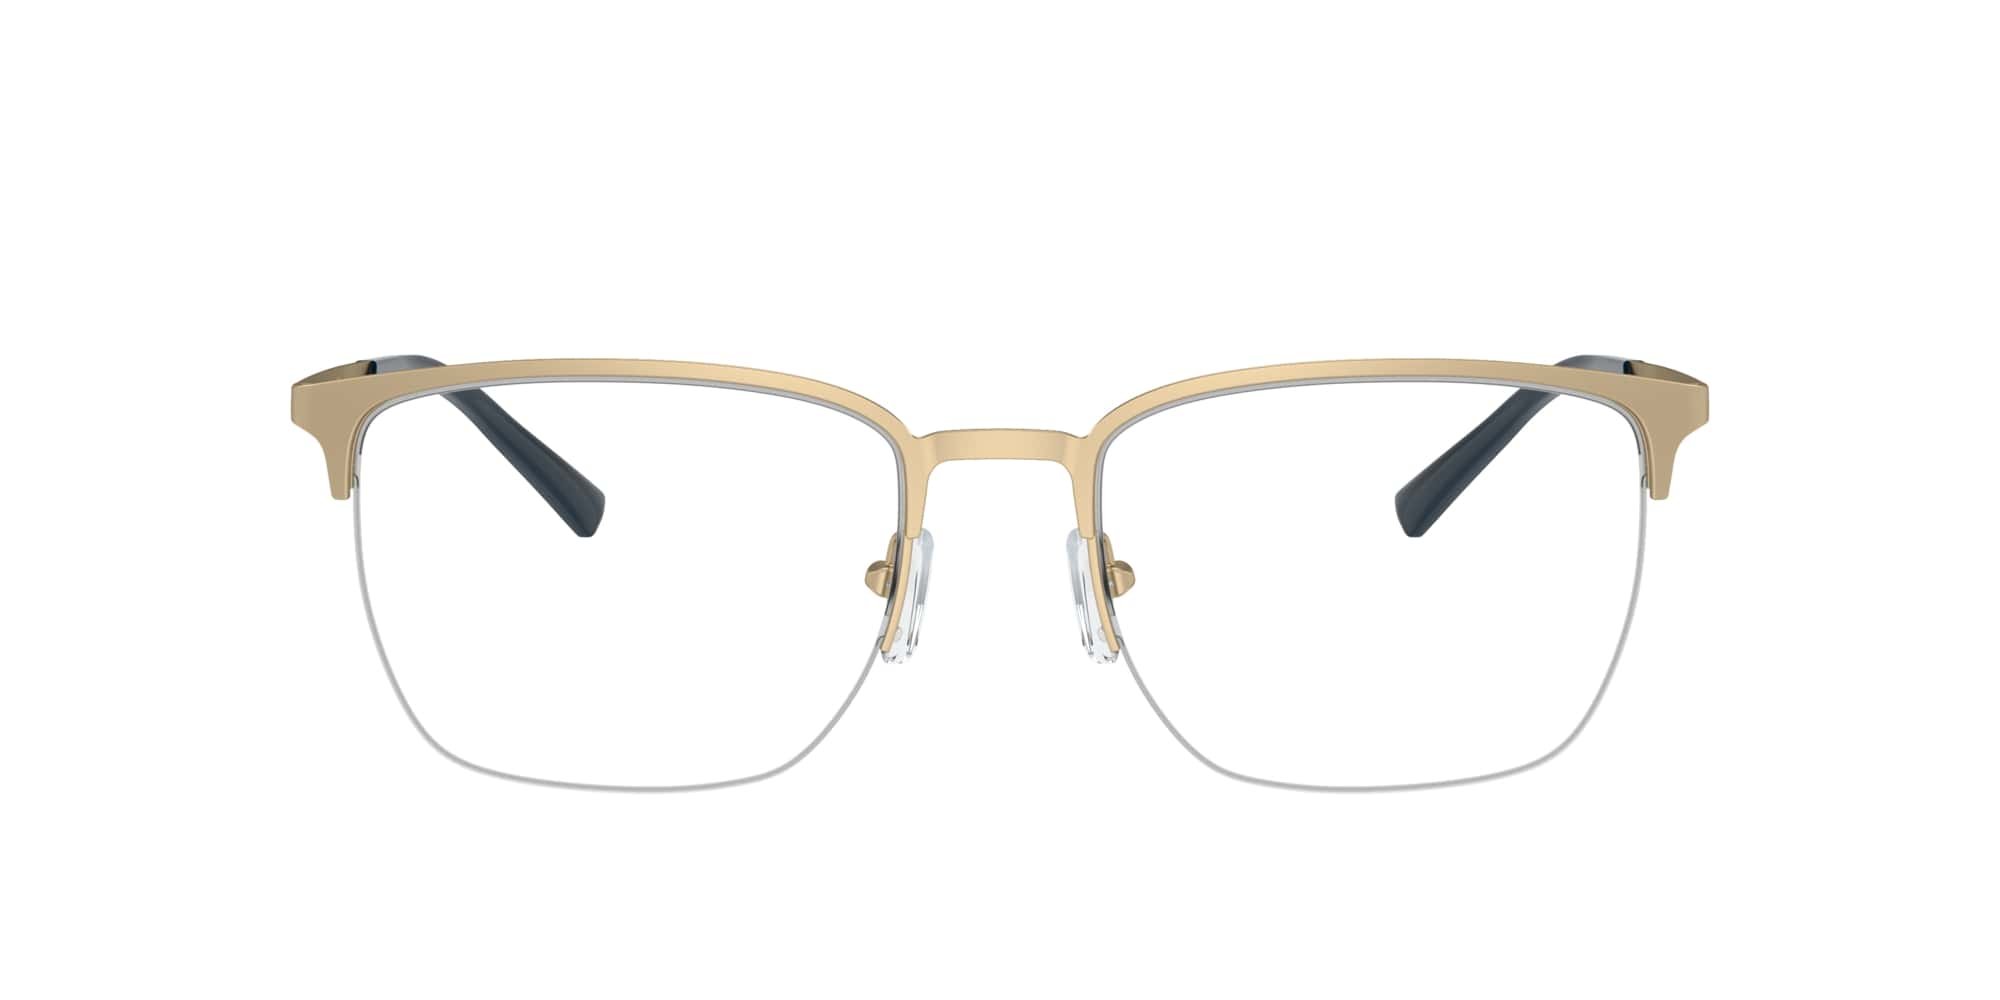 Das Bild zeigt die Korrektionsbrille EA1151 3002 von der Marke Emporio Armani in Gold.